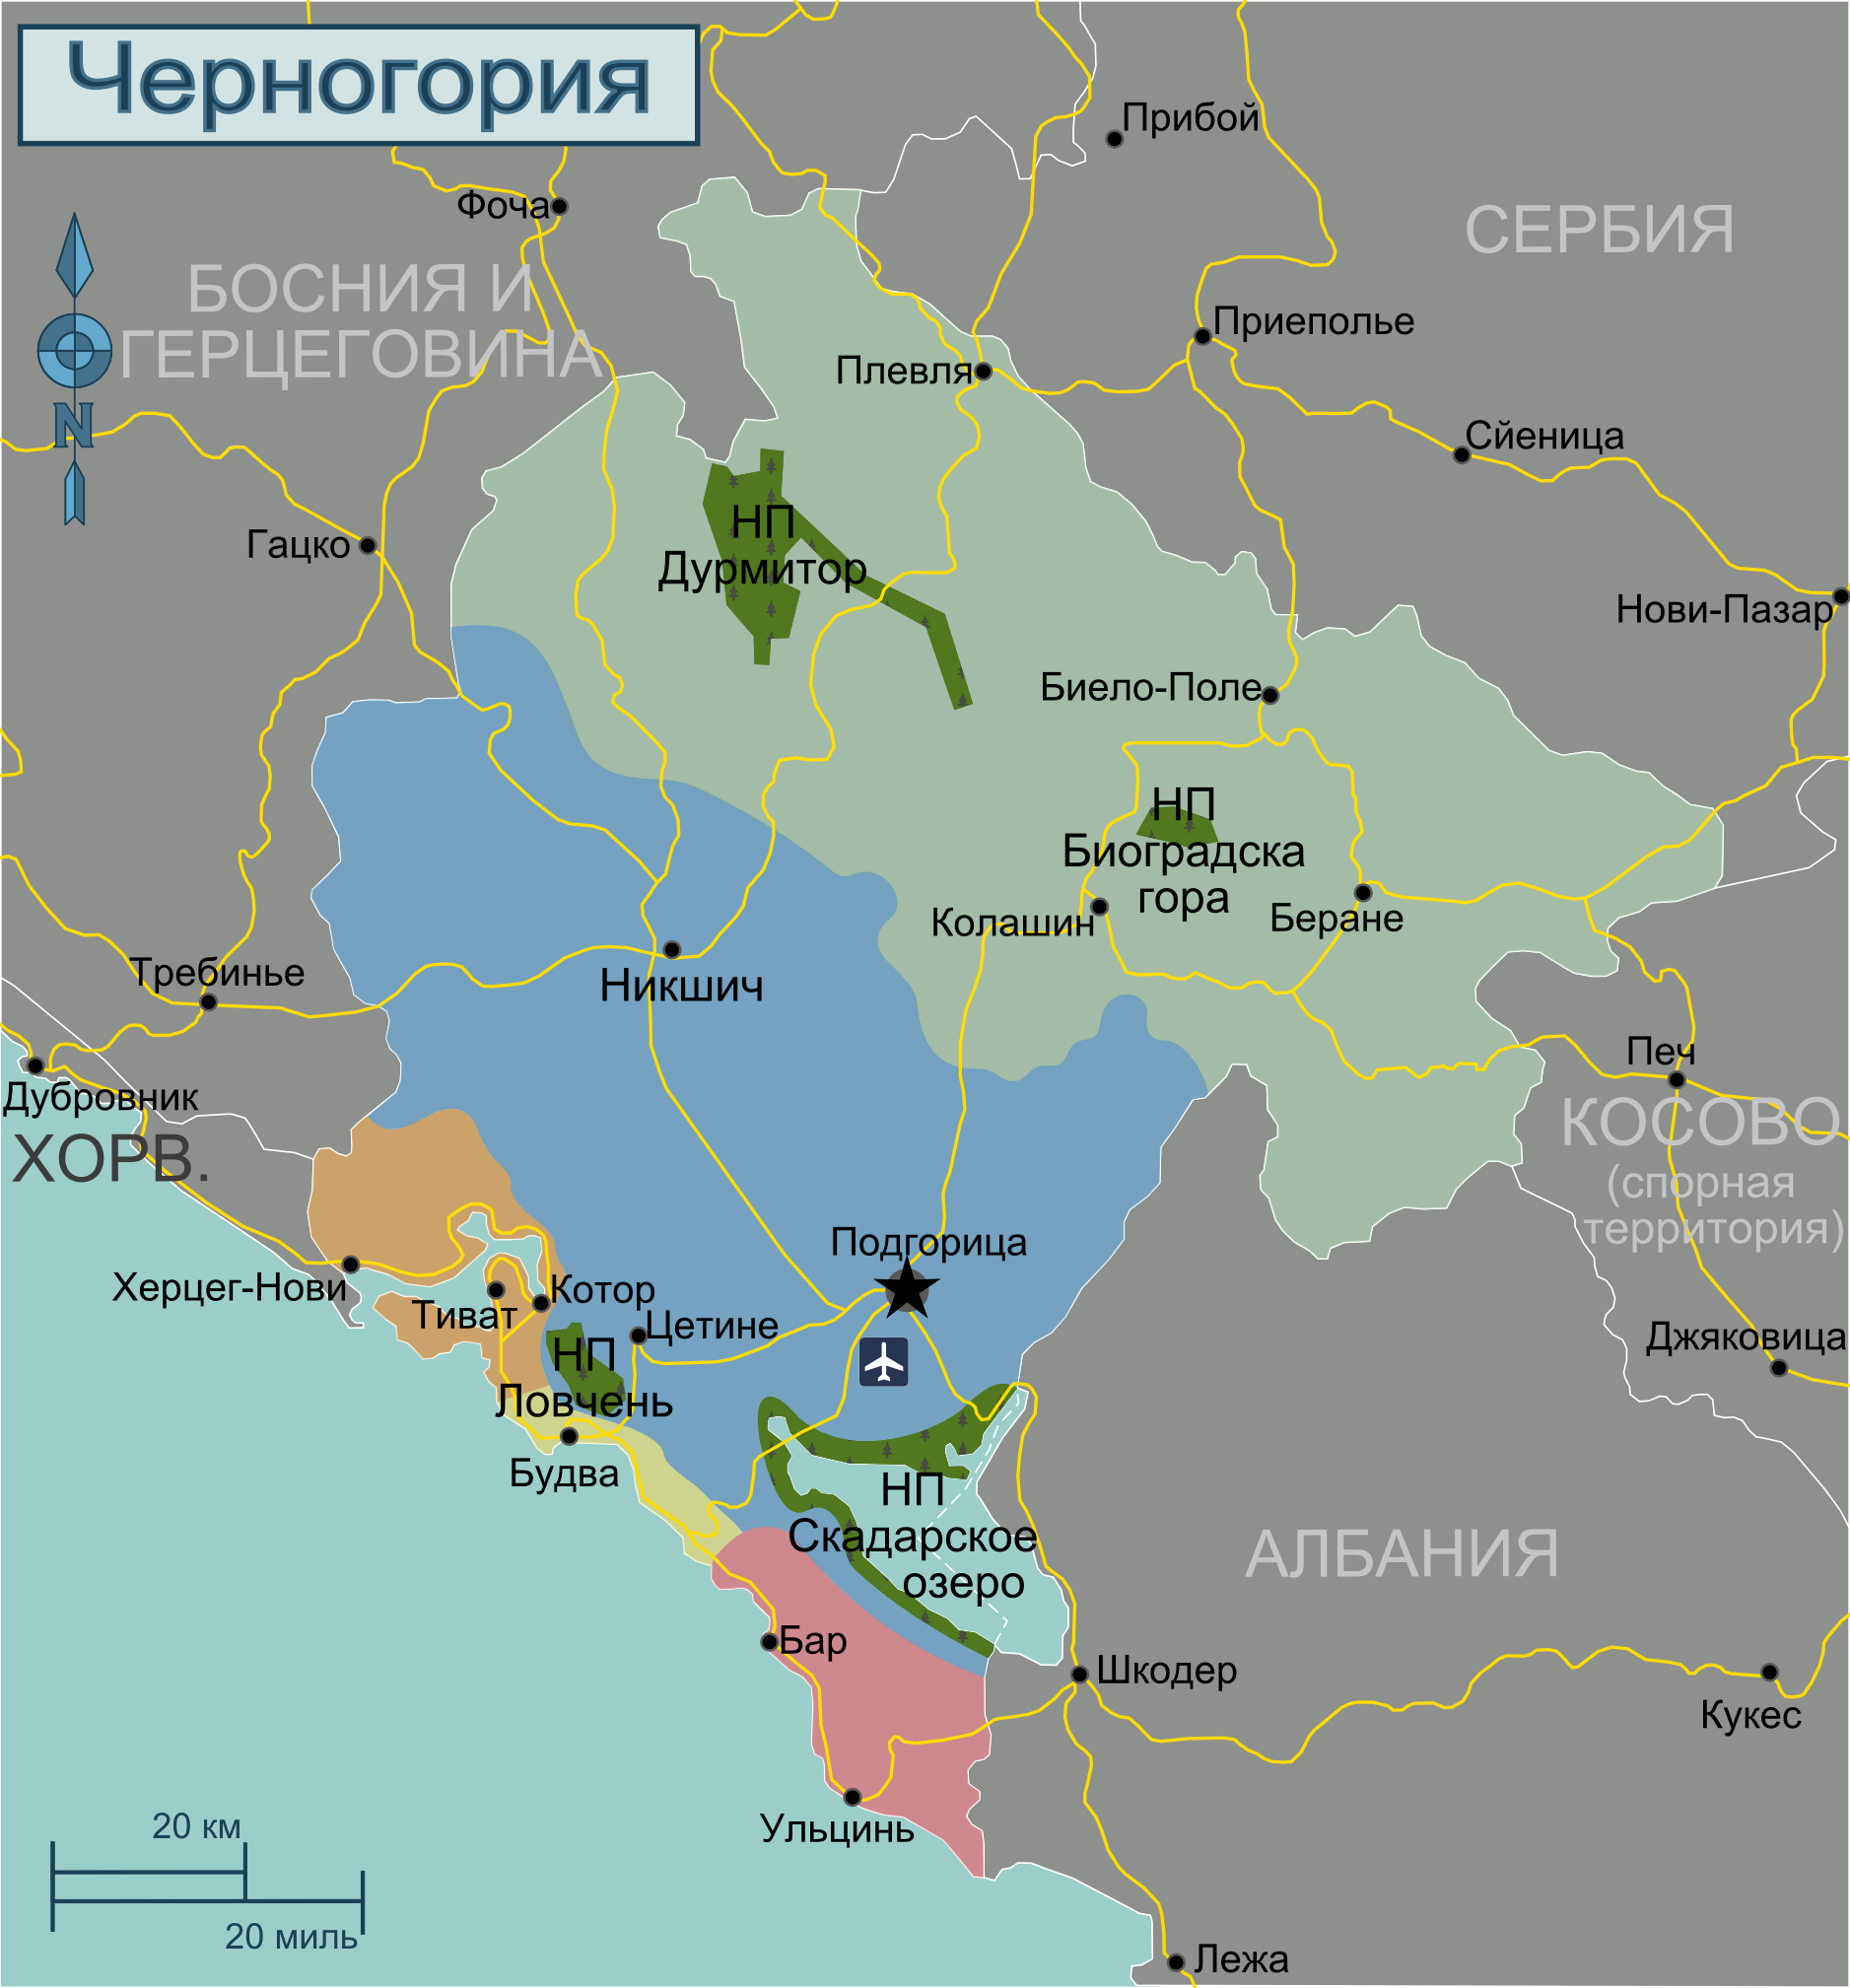 Cập nhật 2023: Bản đồ hành chính đất nước Montenegro (Montenegro Map) phóng to năm 2023, , Bản đồ